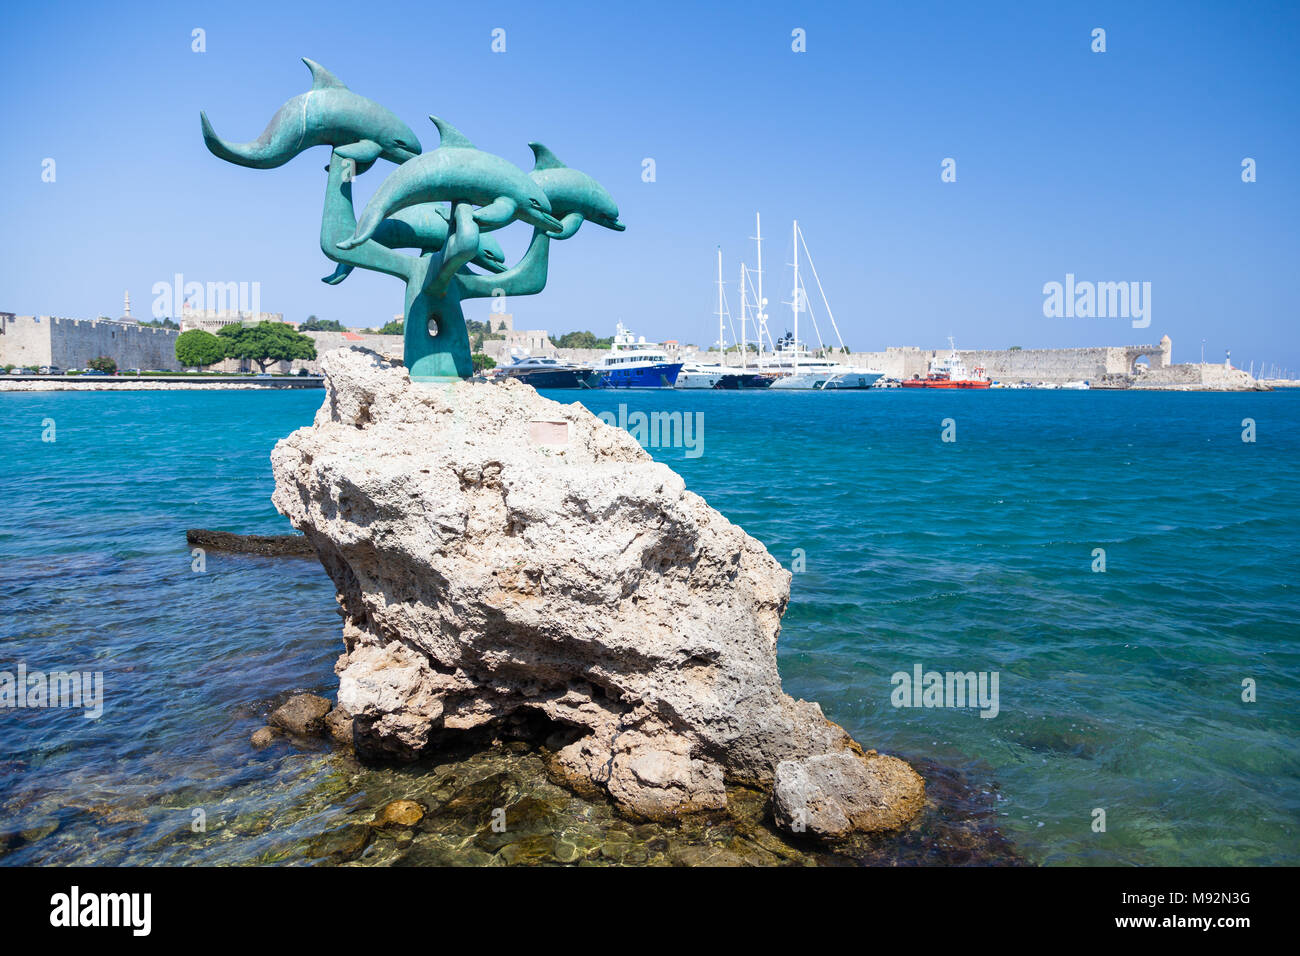 Escultura de bronce de un grupo de delfines en Rodas, Grecia, el 11 de agosto, 2017 Foto de stock